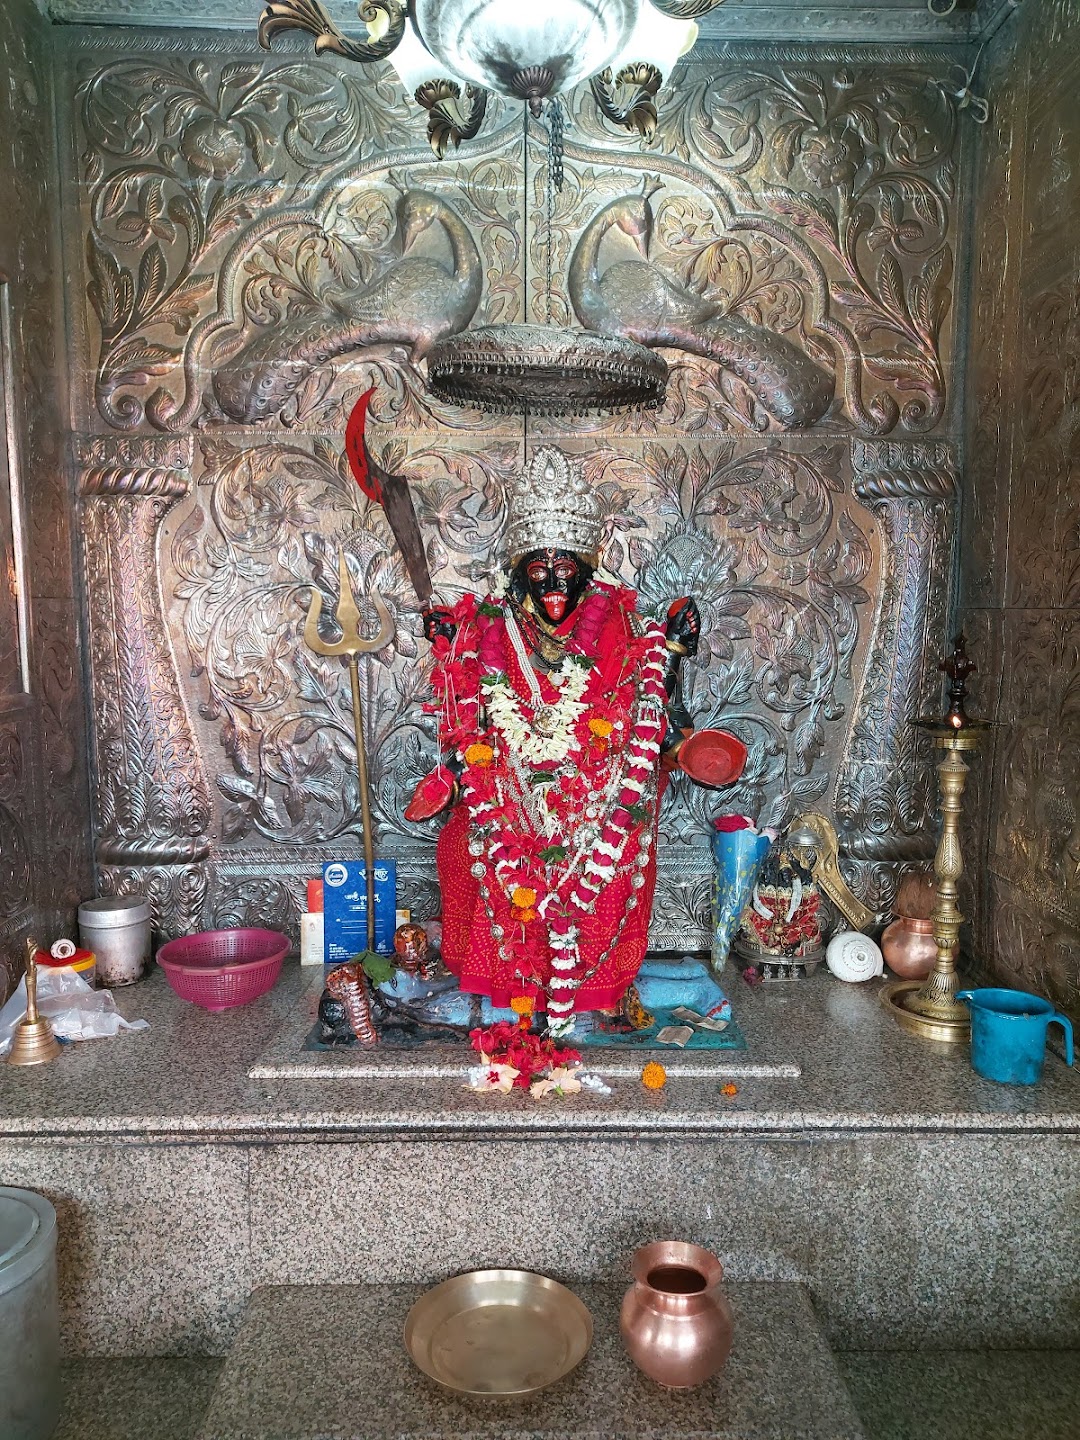 छत्तीसगढ़ के रायपुर में स्थित माता महाकाली मंदिर की महिमा जहां रोजाना सैकड़ों चमत्कार होते रहते है।